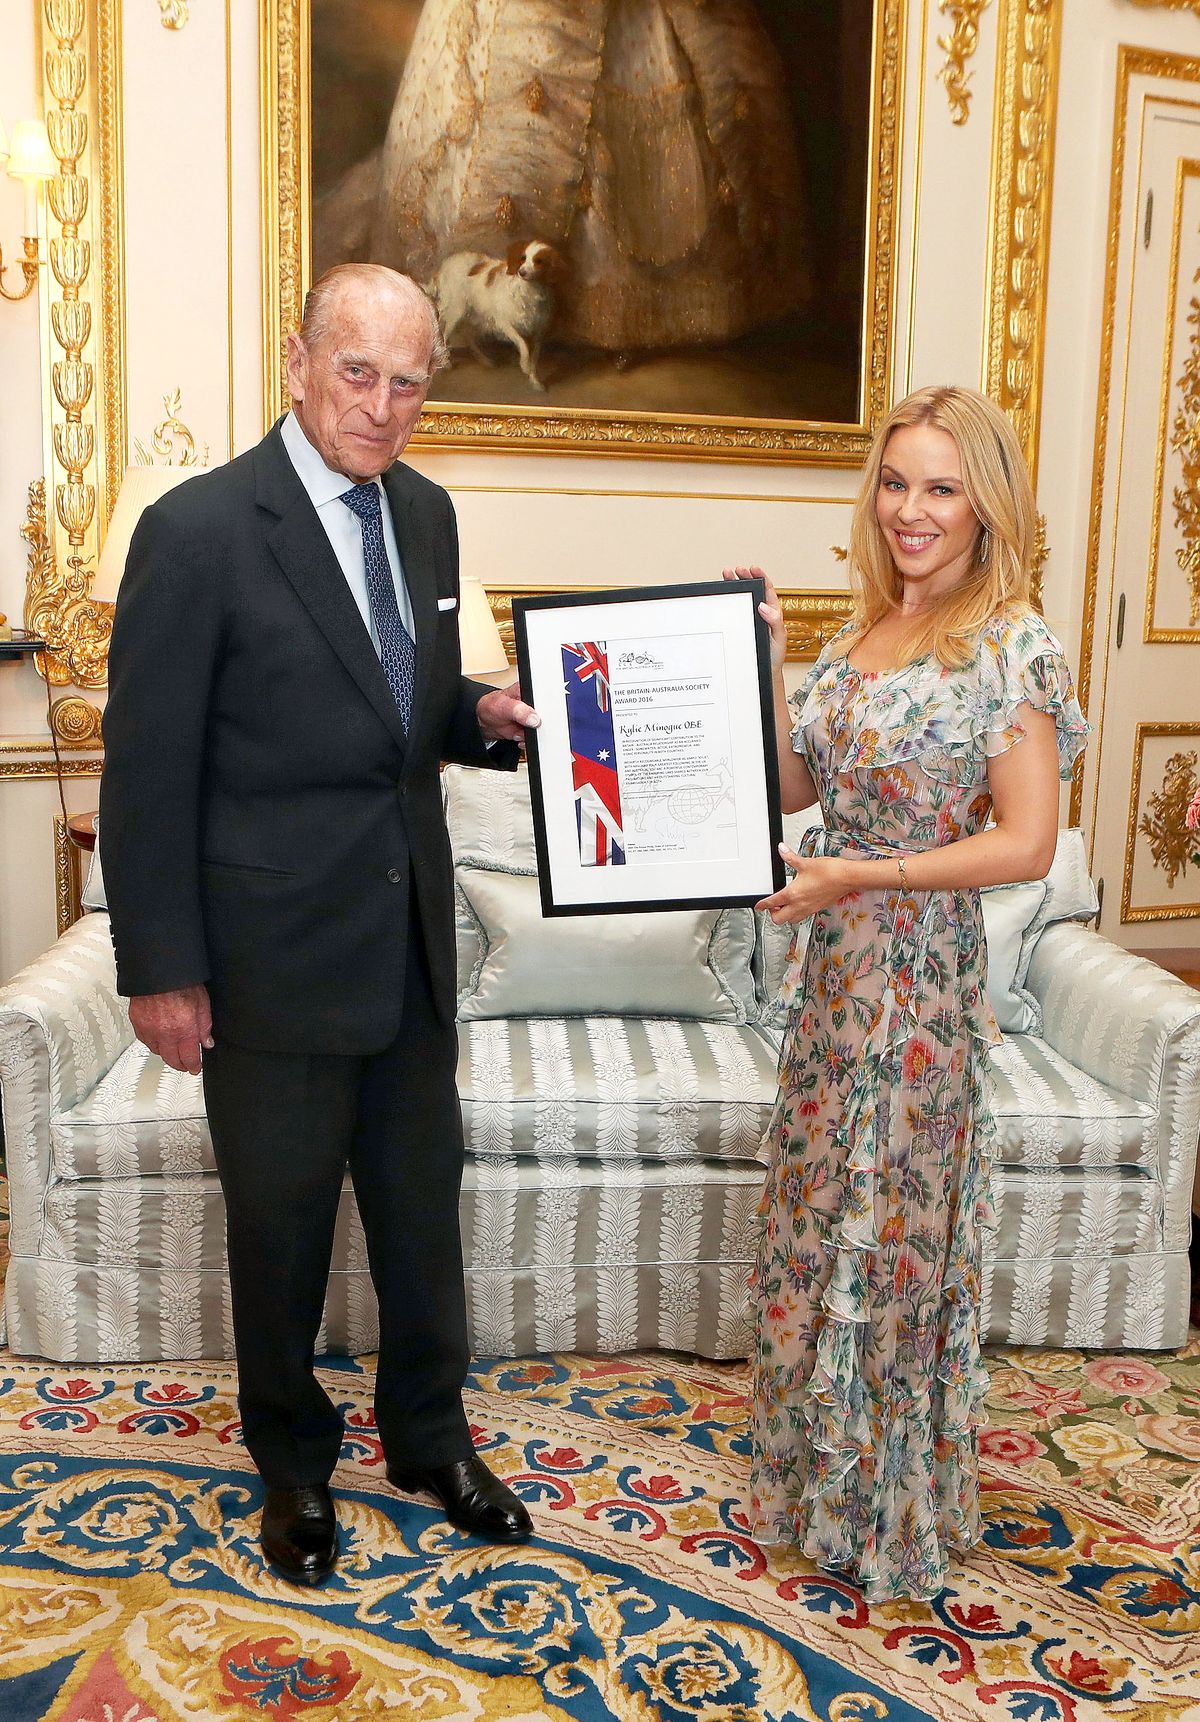 Принц Филипп, герцог Эдинбургский вручает Кайли Миноуг премию Британо-Австралийского общества